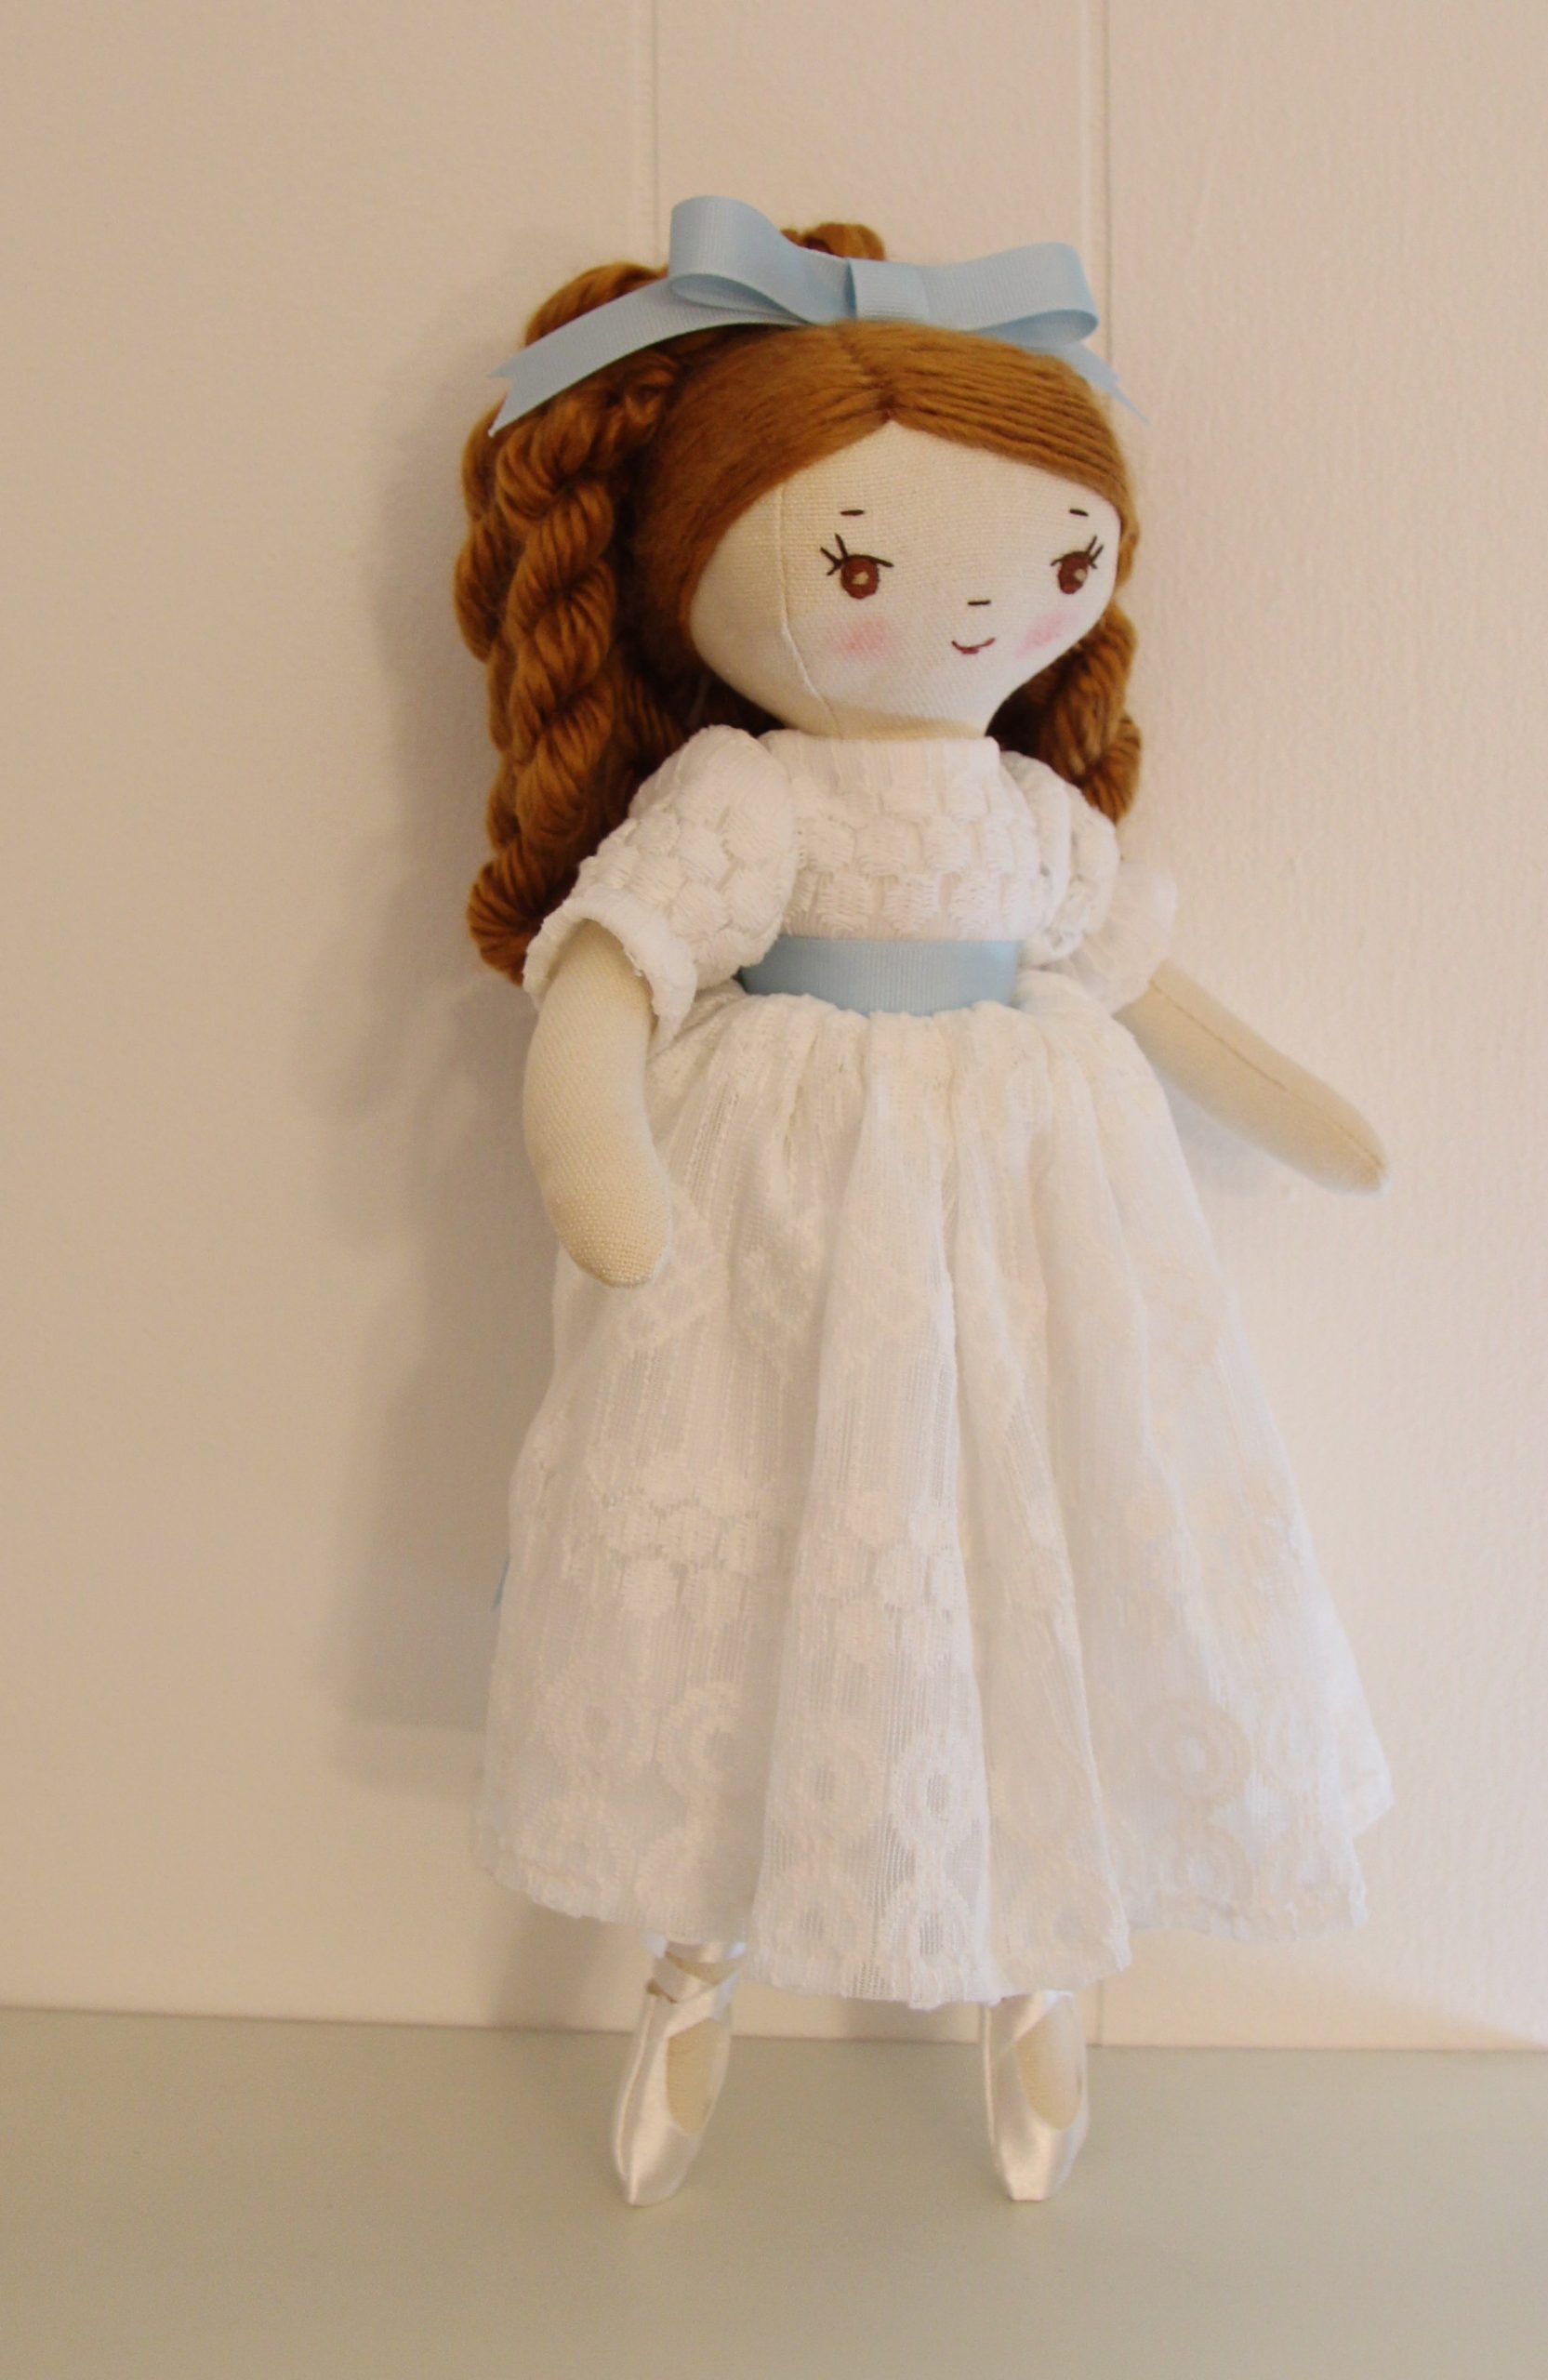 handmade doll Clara from the Nutcracker